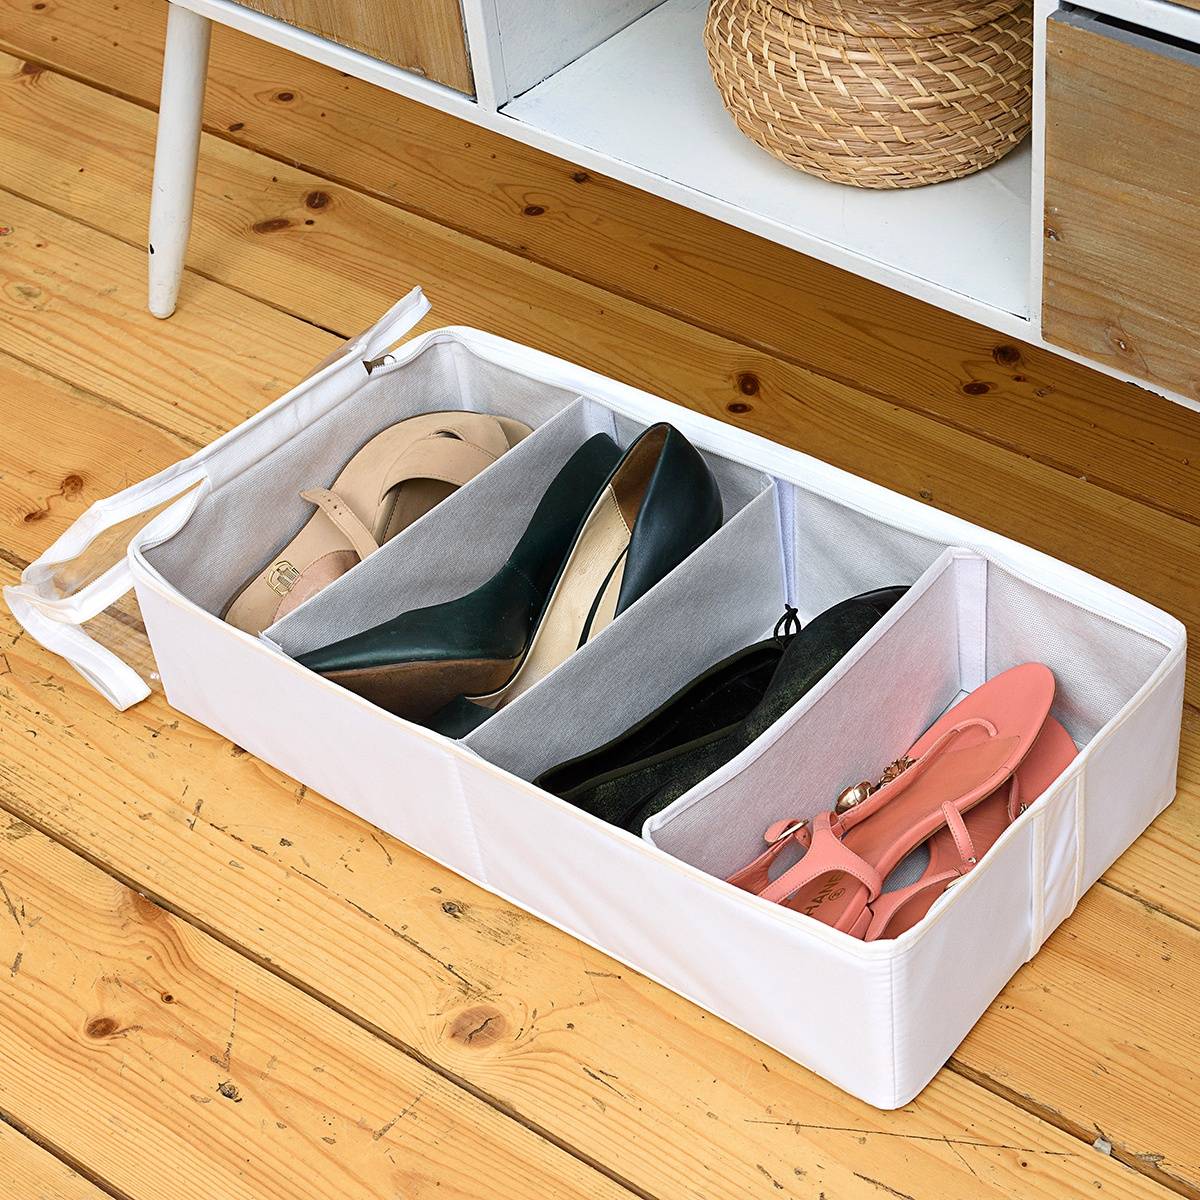 Как хранить обувь, если в квартире мало места